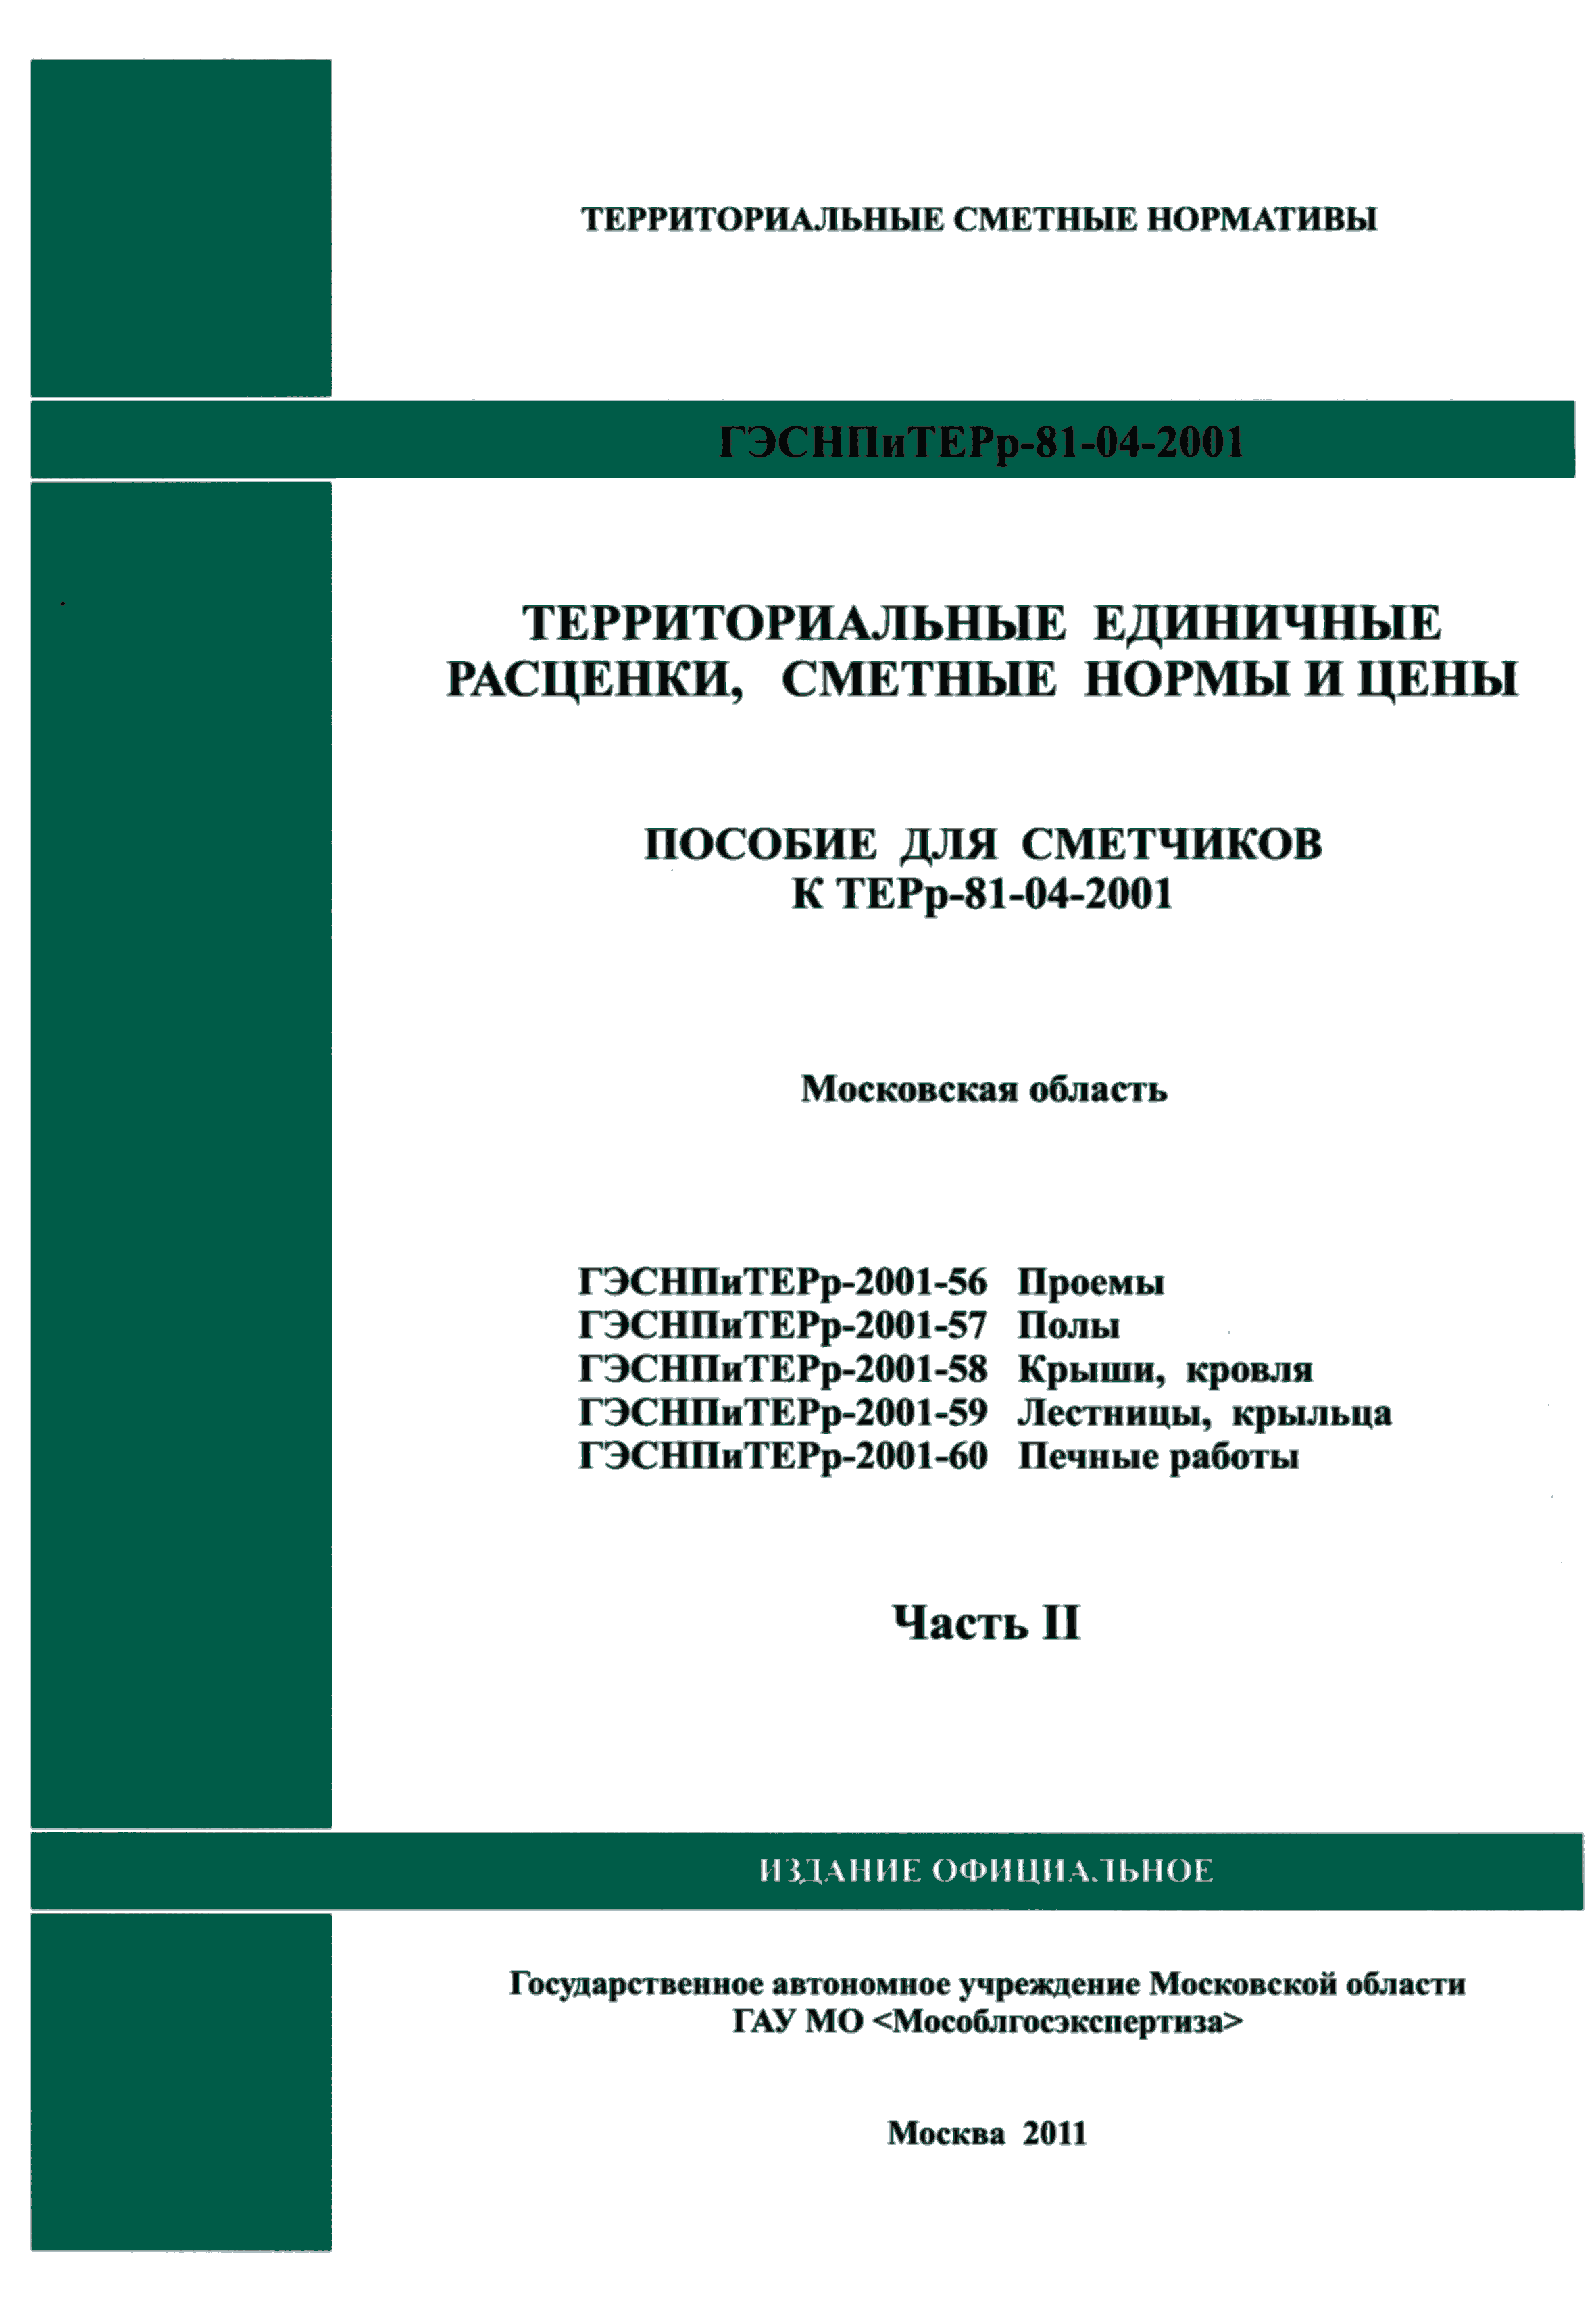 ГЭСНПиТЕРр 2001-57 Московской области